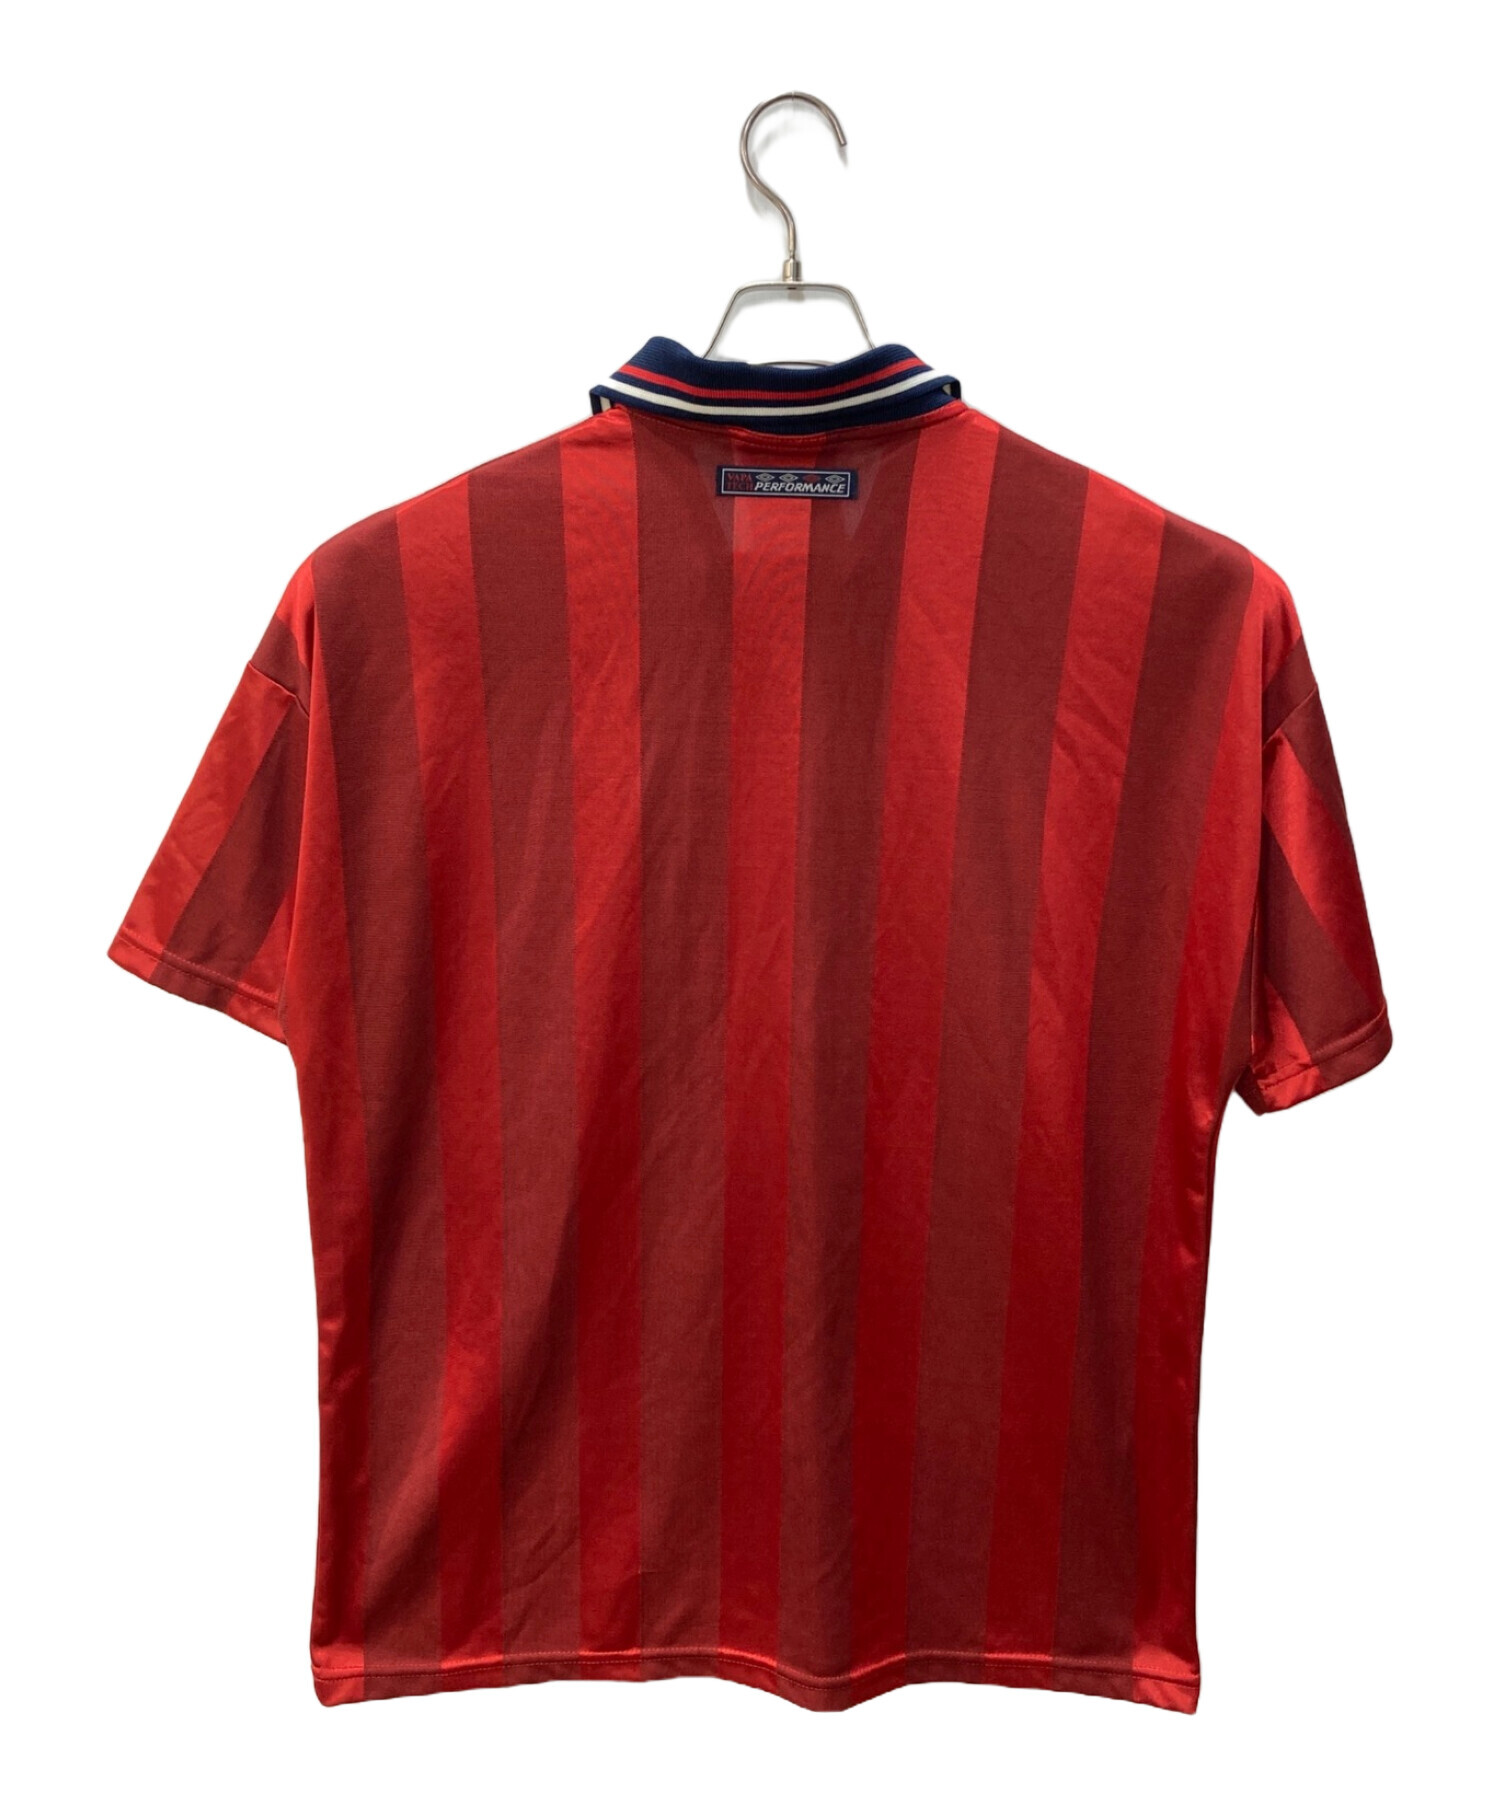 UMBRO (アンブロ) サッカーゲームシャツ レッド サイズ:41